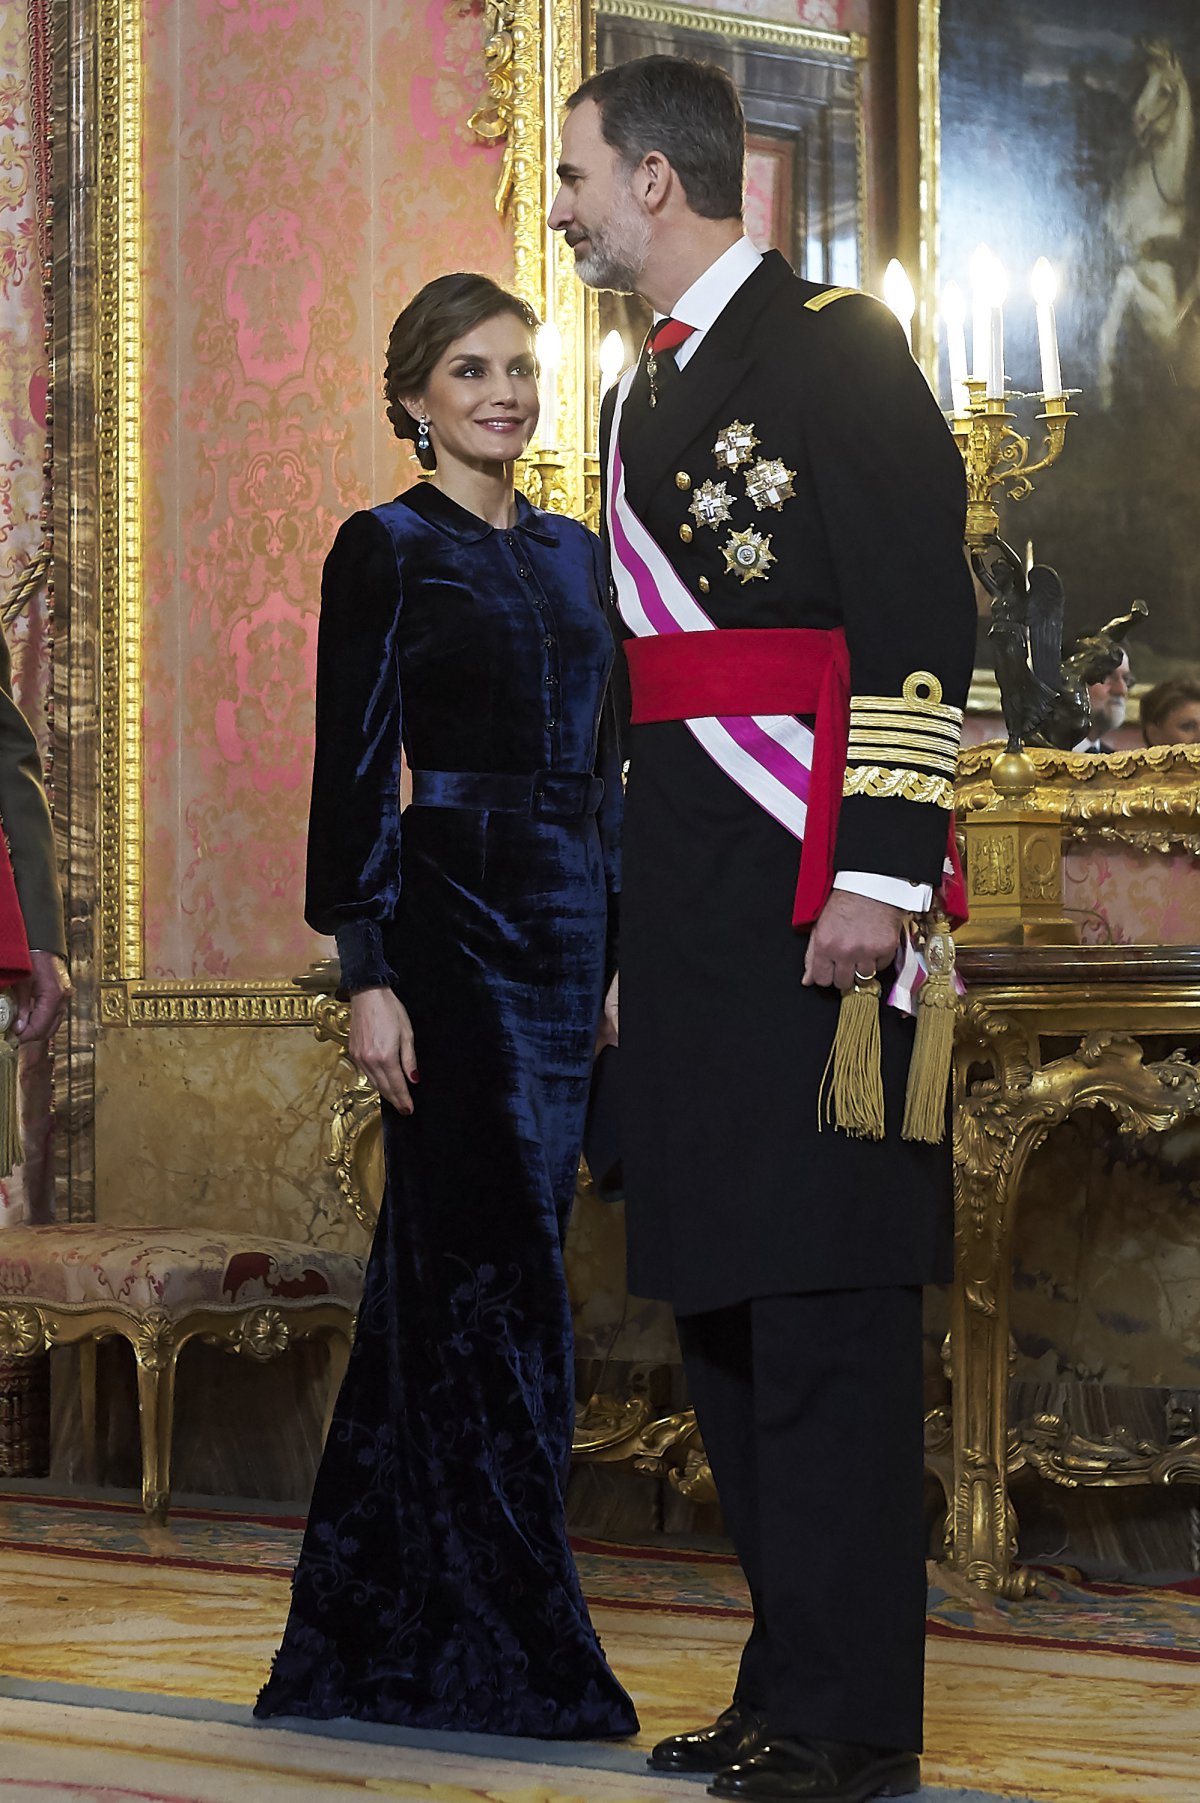 La reina Letizia comienza el año dando una lección de estilo en azul